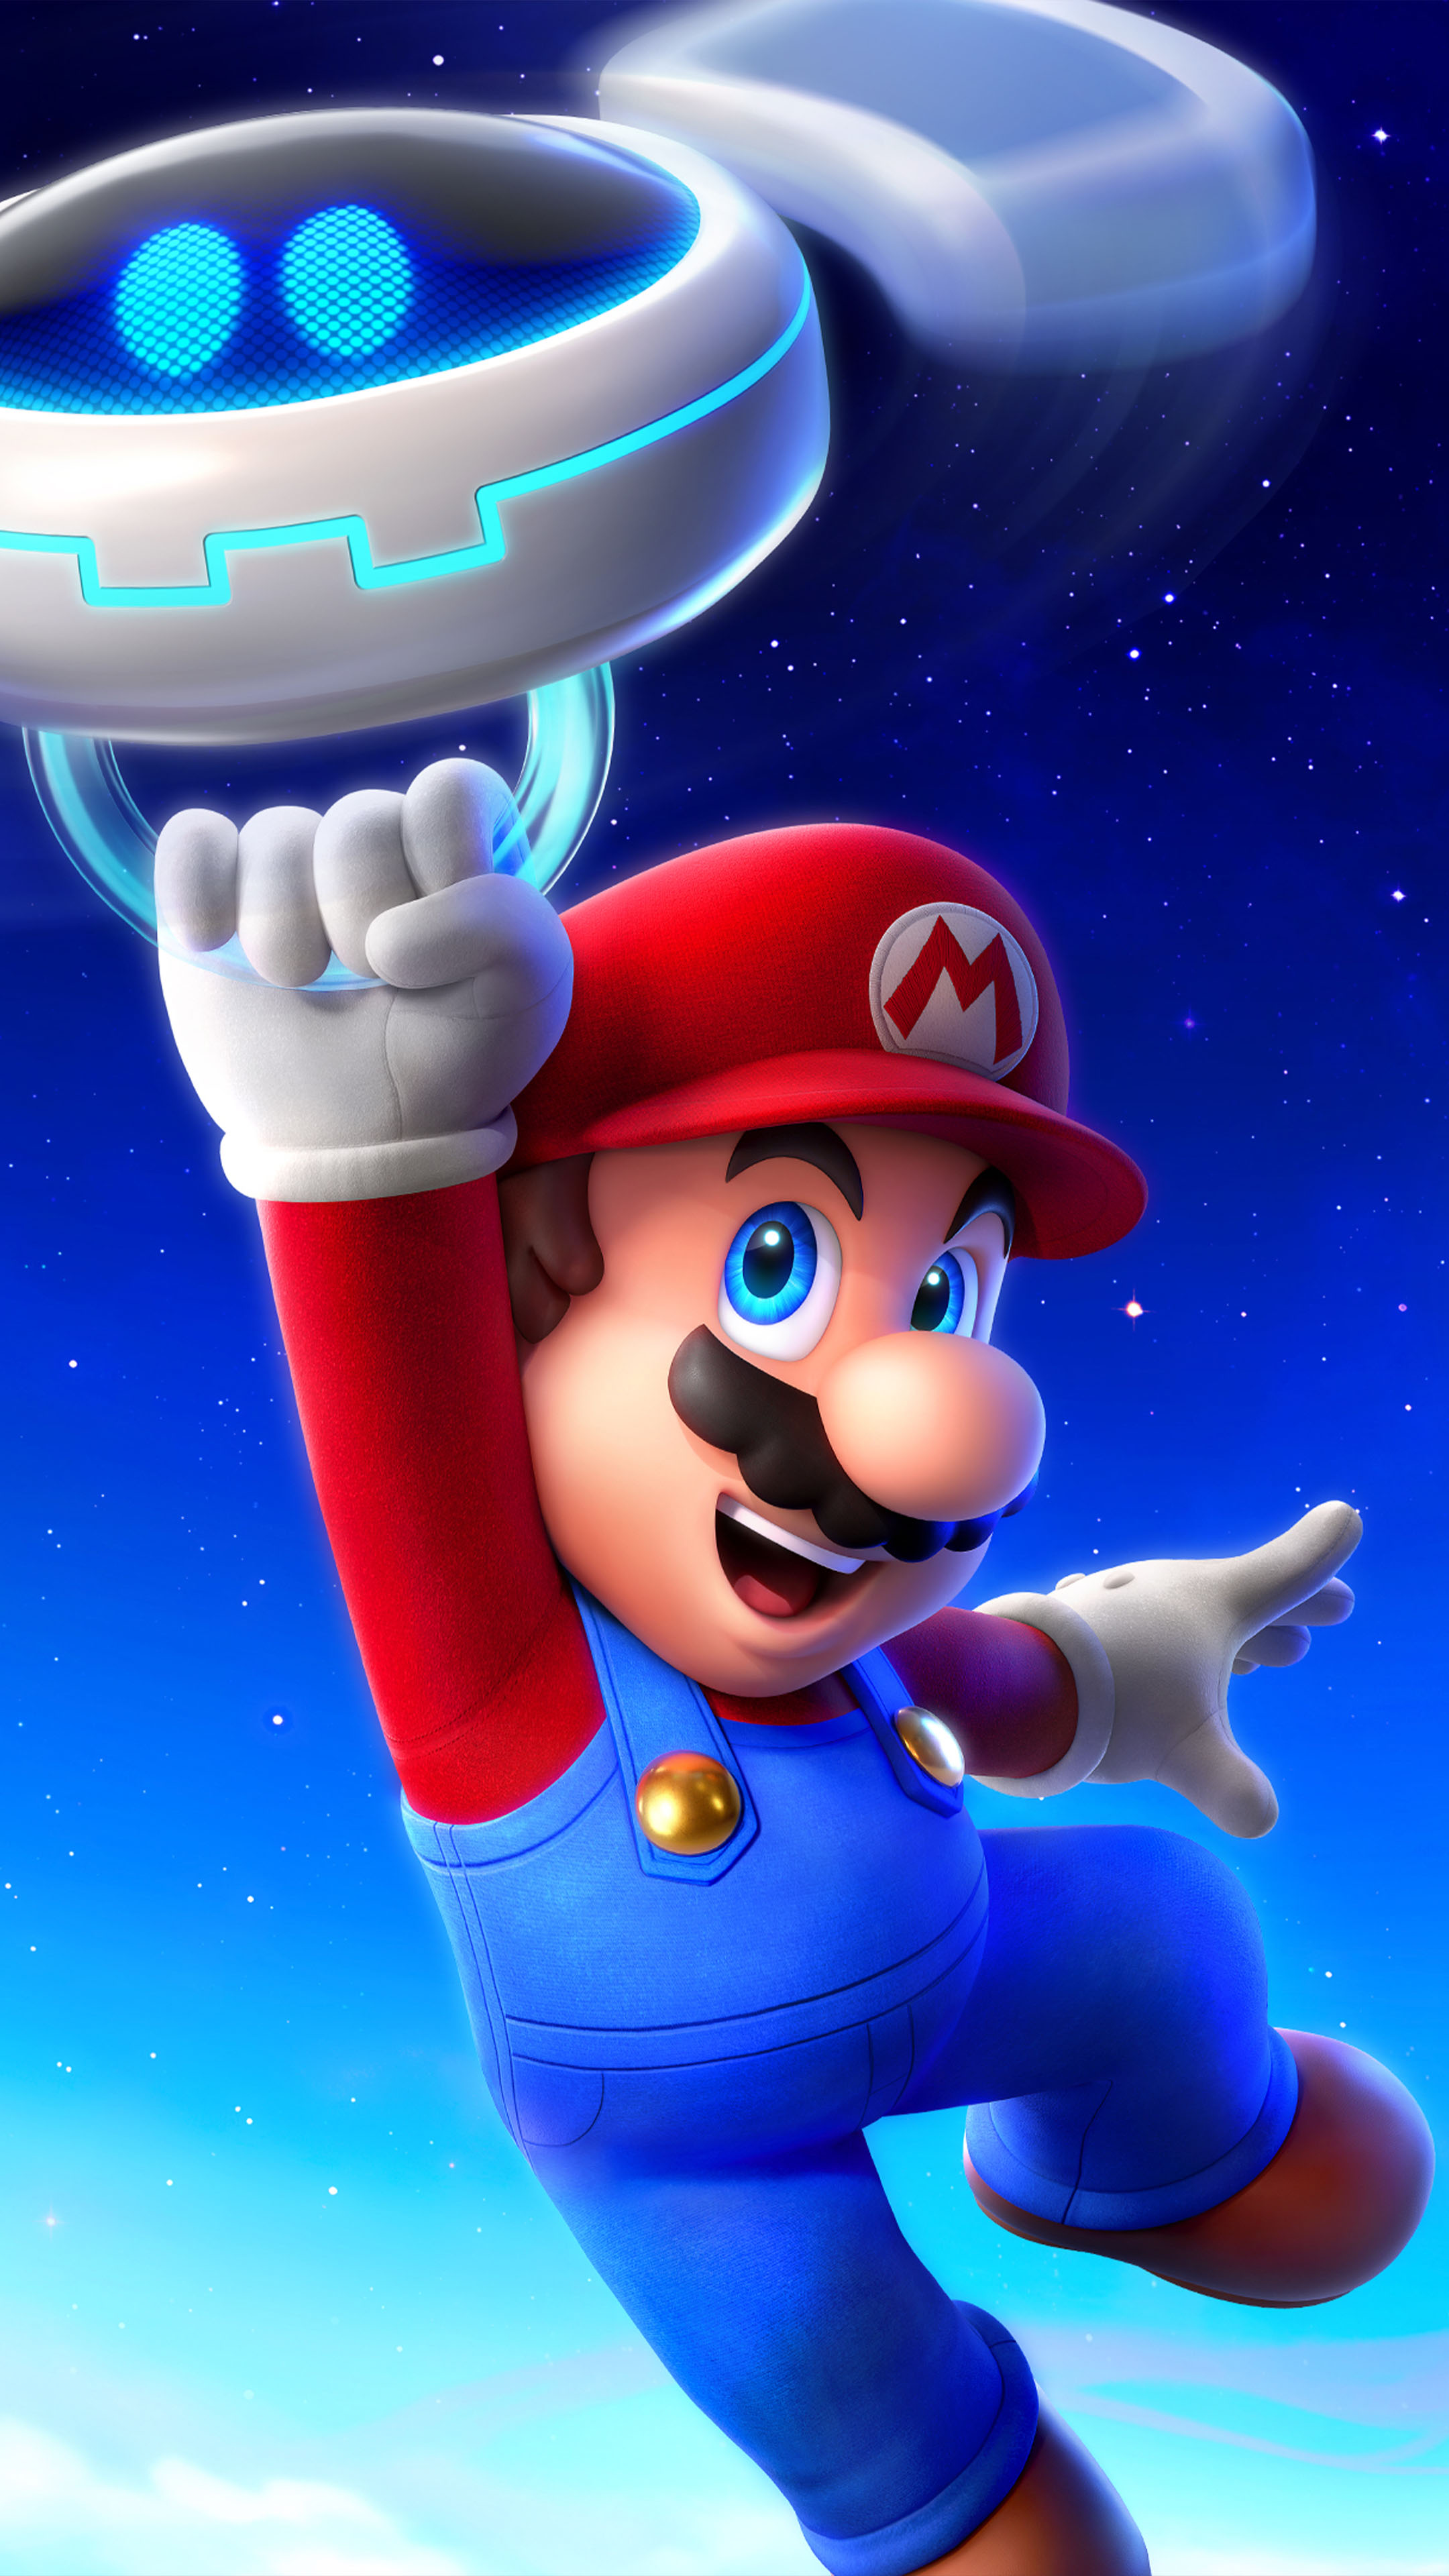 Hướng dẫn tự làm hình nền cực độc có phong cách Super Mario